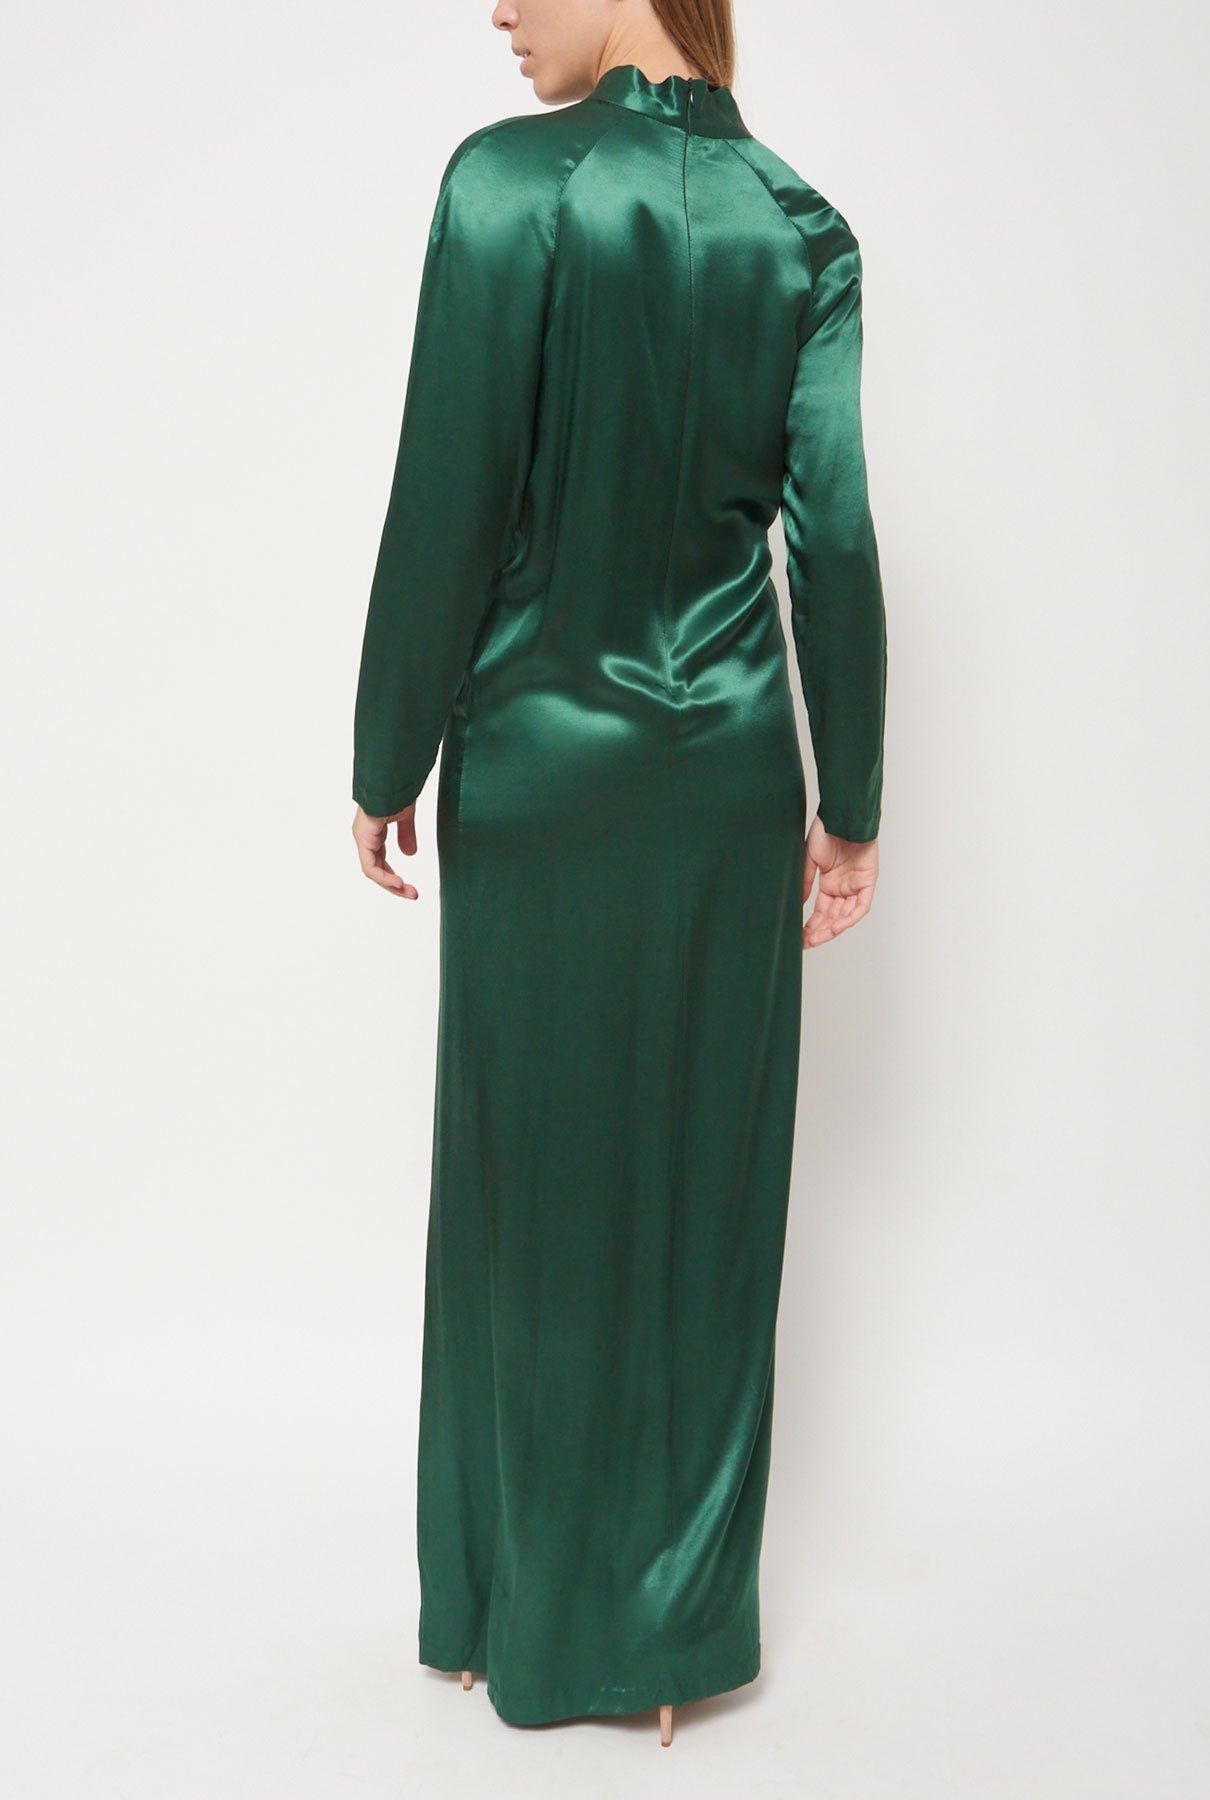 Vestido verde largo raso Dress Leandro Cano 